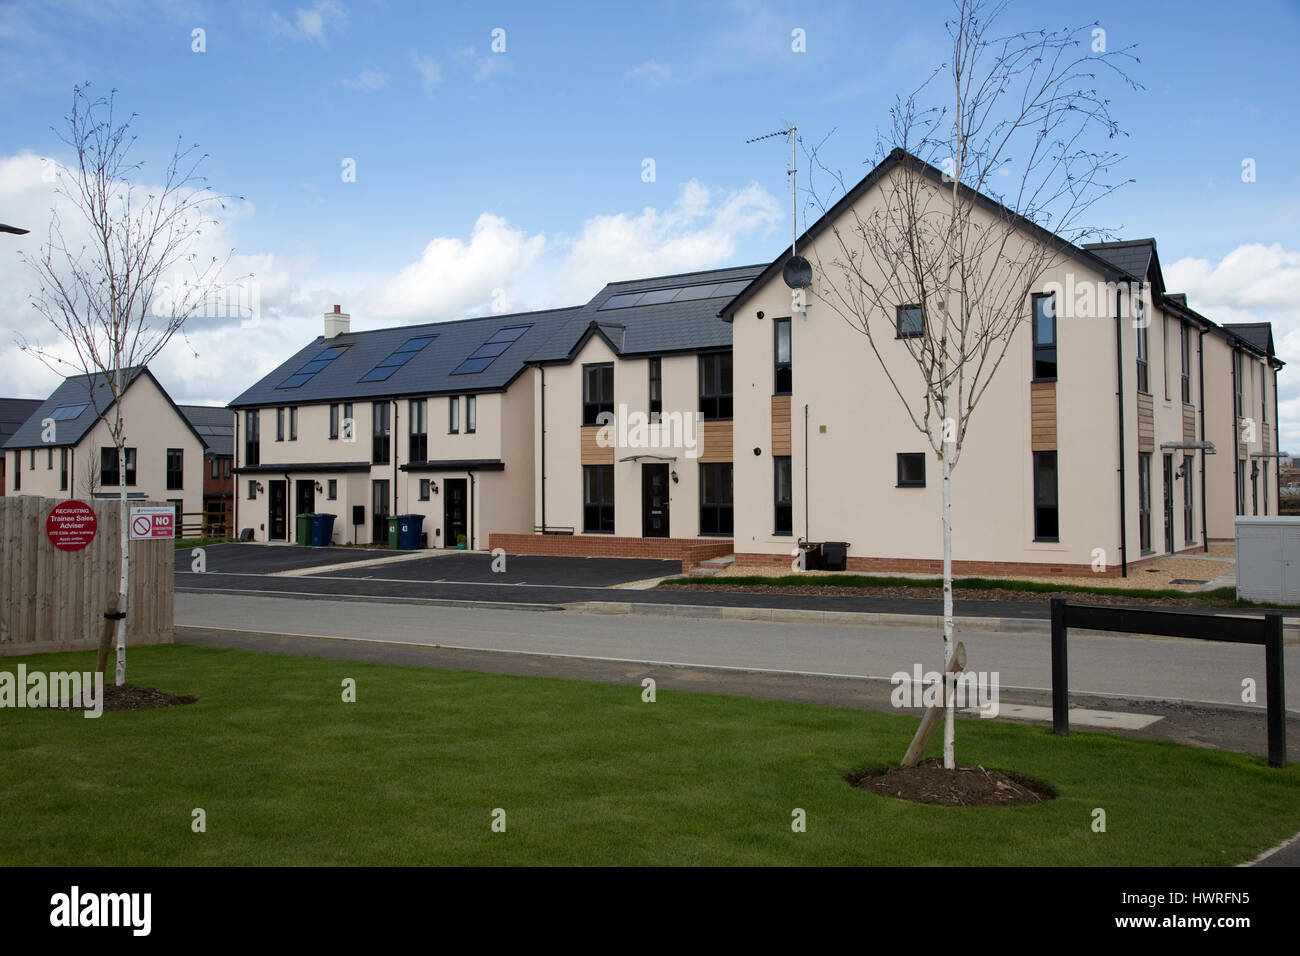 Nouvelles maisons 2017 avec tous les panneaux solaires PV noir kaki greenacres bishops cleeve cheltenham uk Banque D'Images